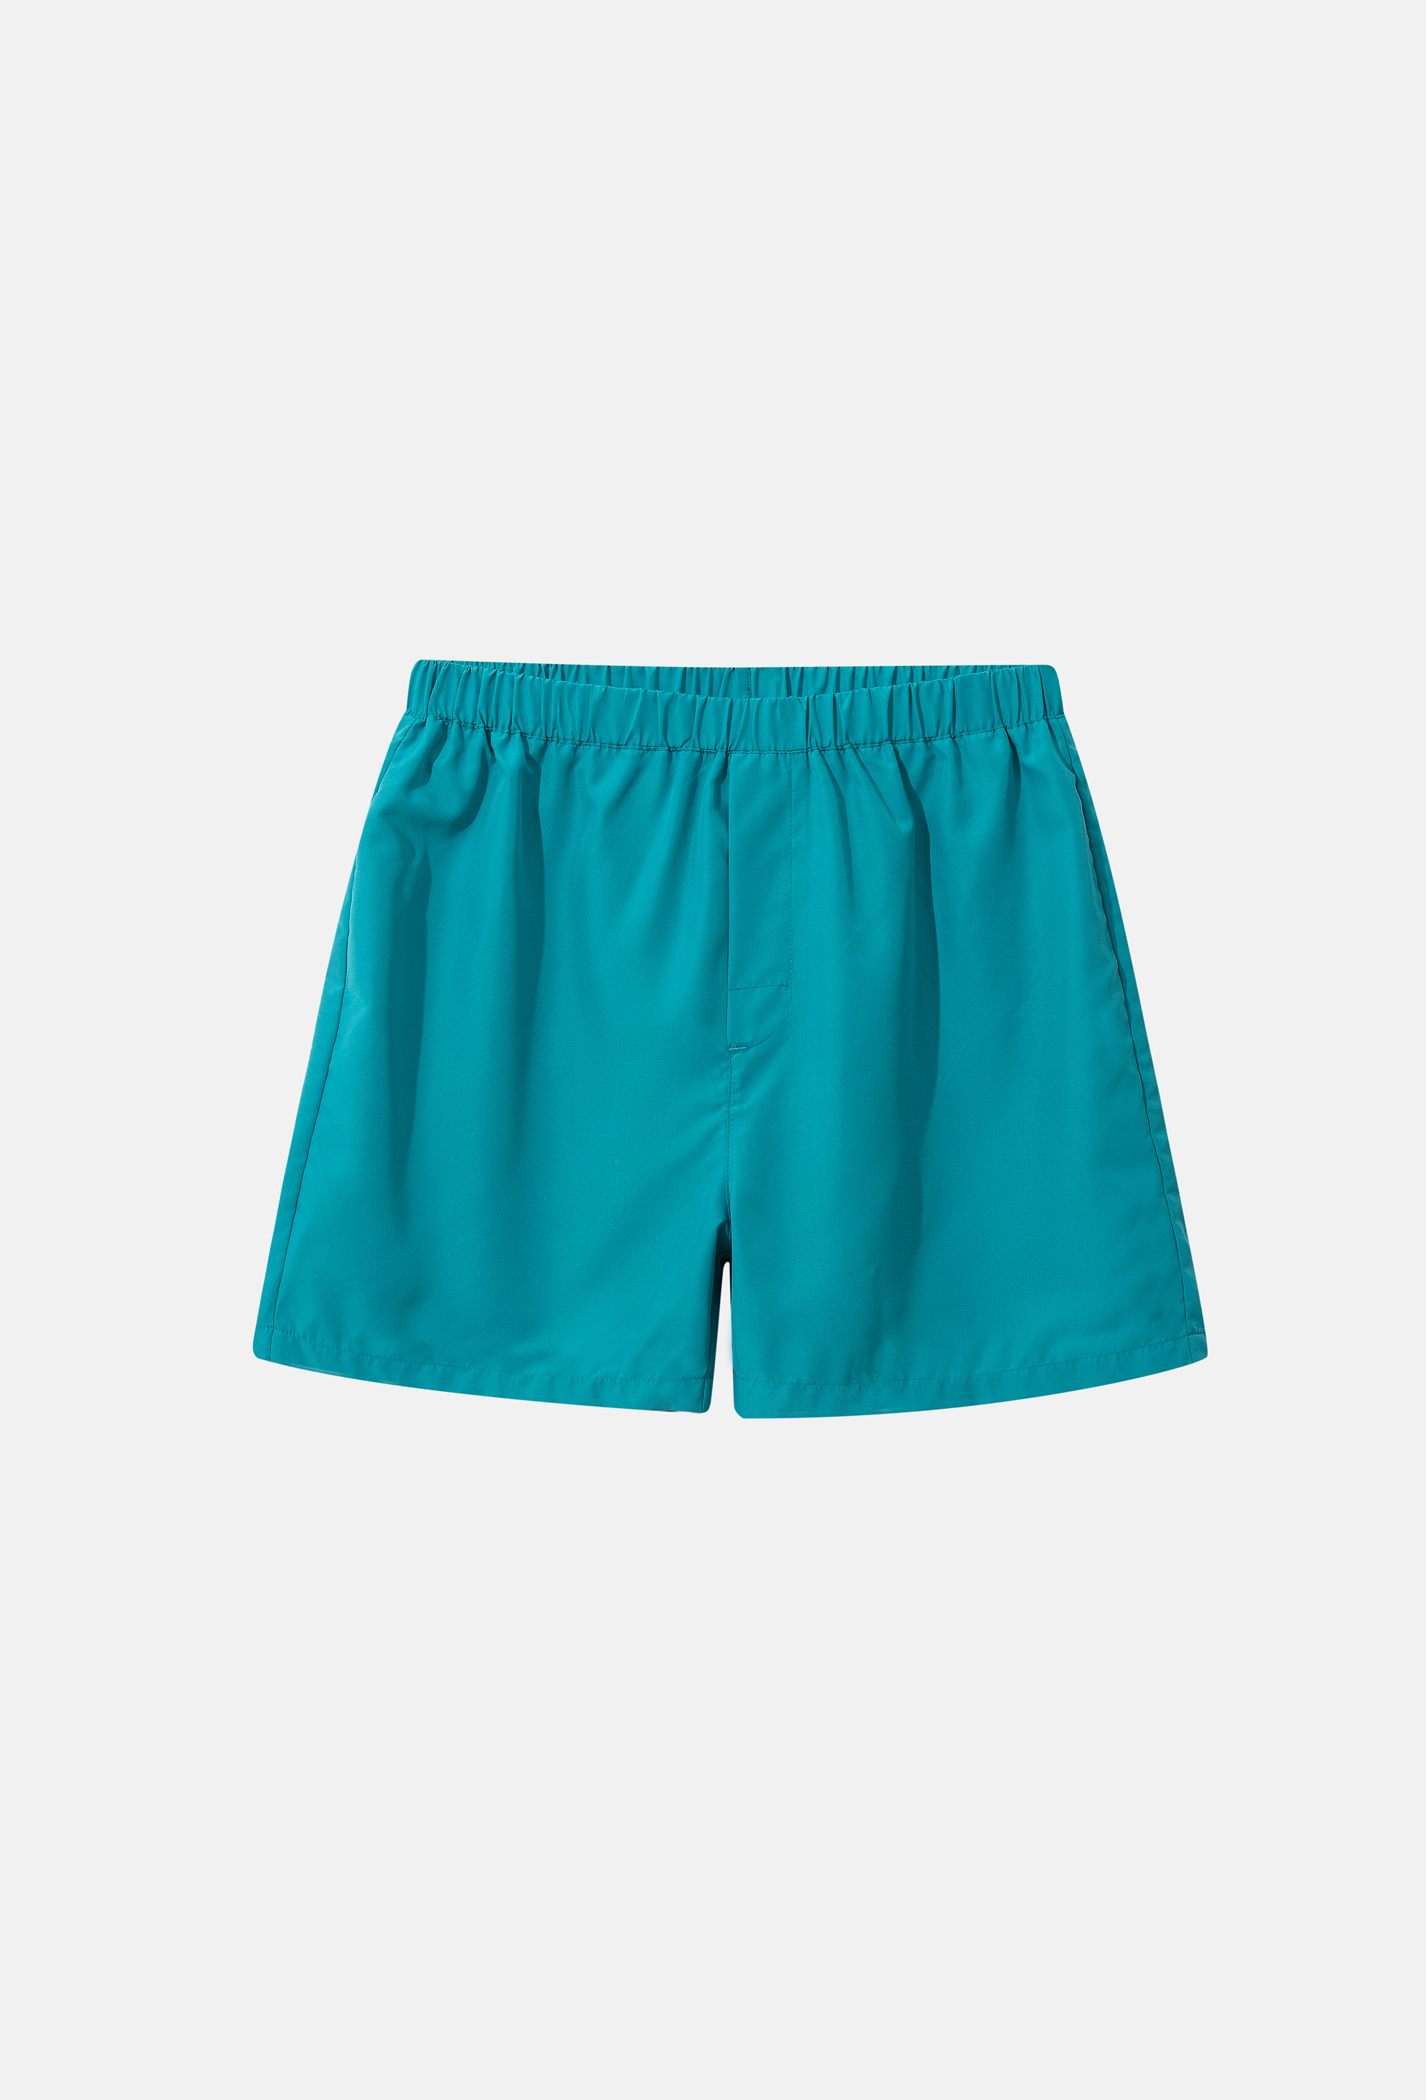 Săn deal - Quần Shorts mặc nhà Coolmate Basics Xanh ngọc